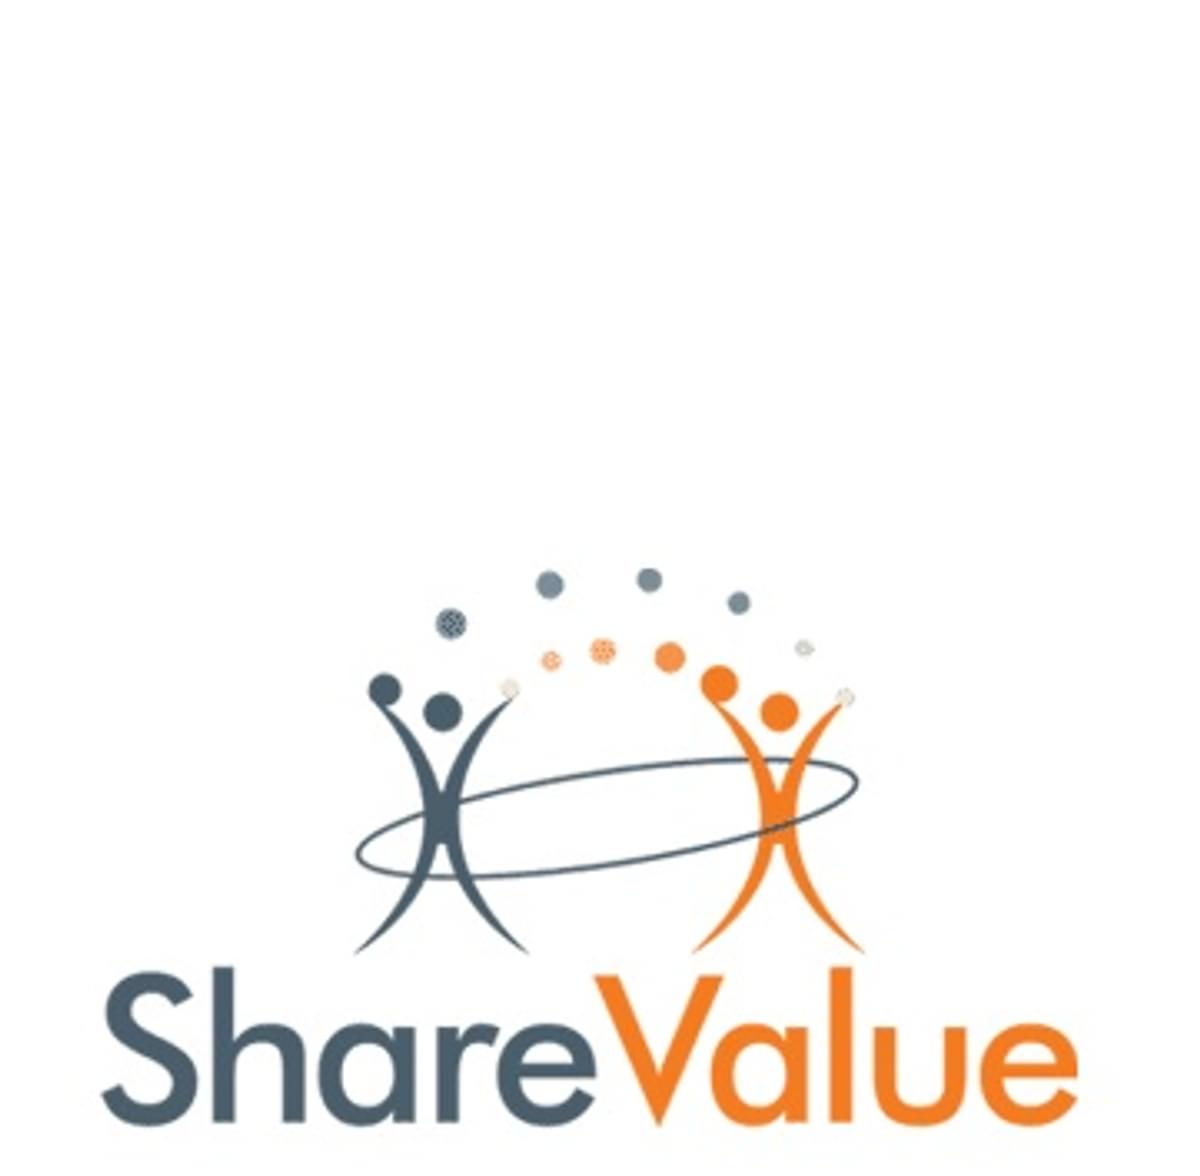 ShareValue is nu volledig autonoom image